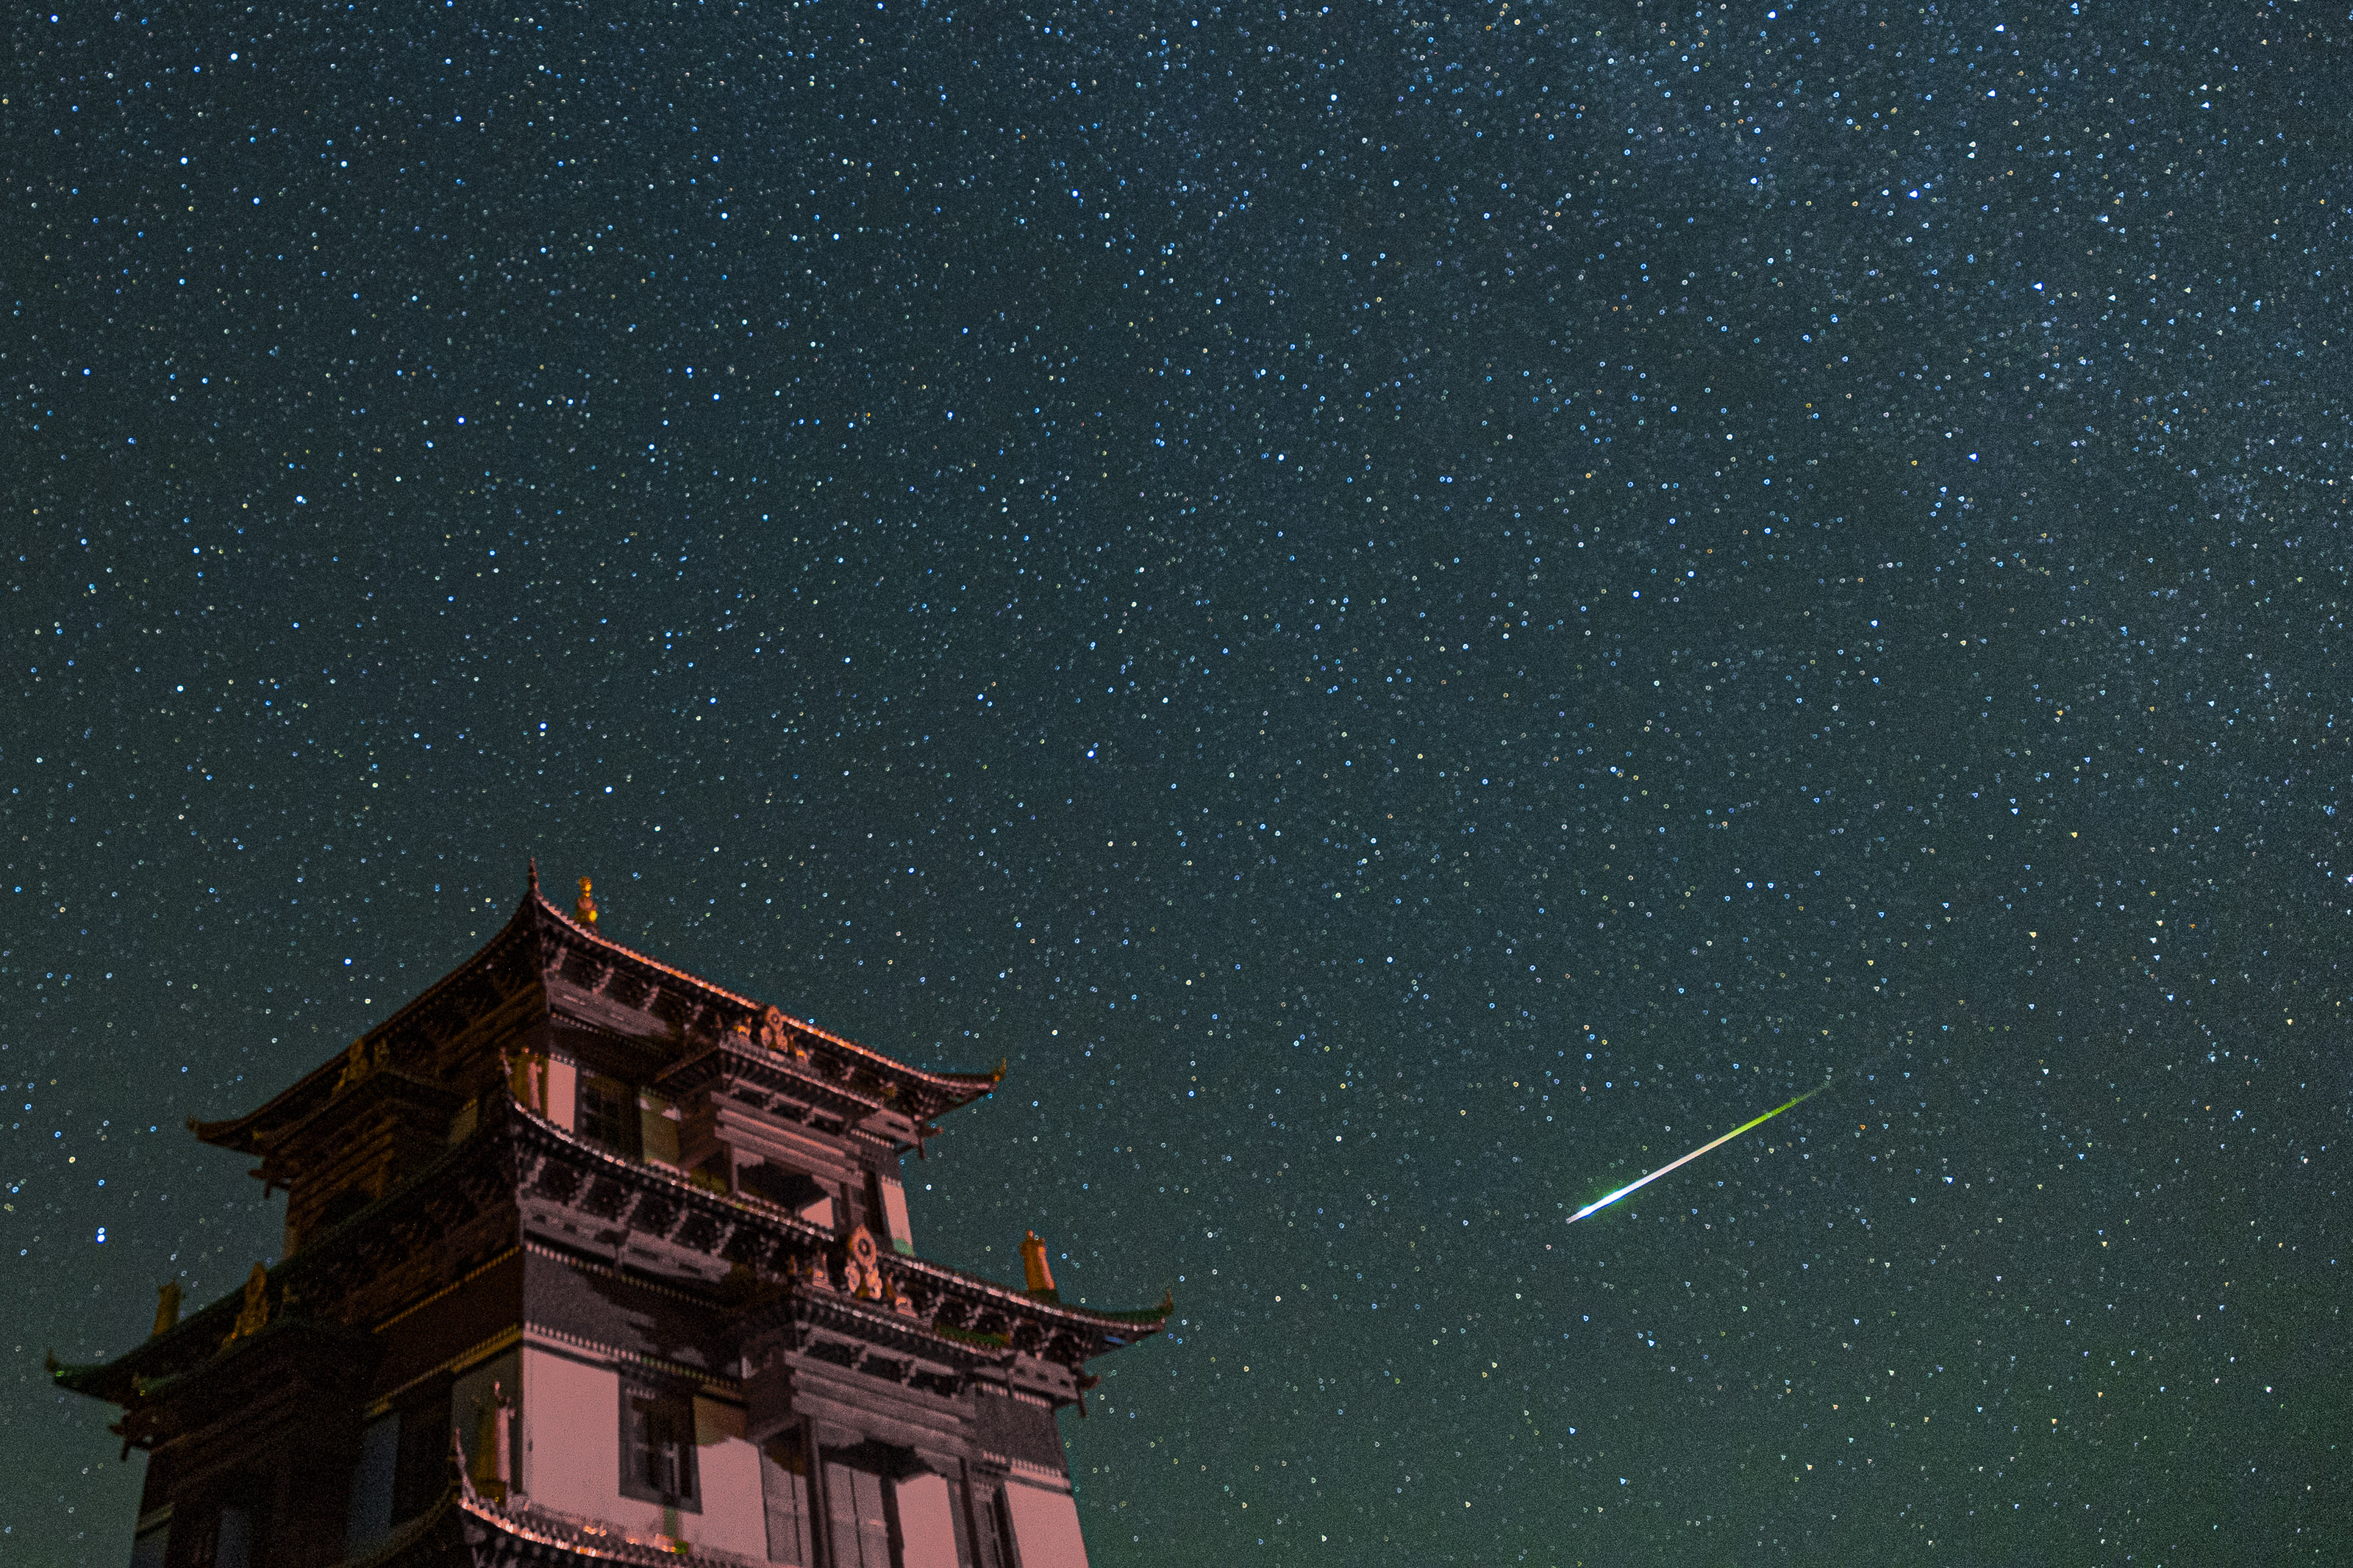 Un grande edificio sulla sinistra e una luminosa meteora bianca che sfreccia nel cielo stellato.